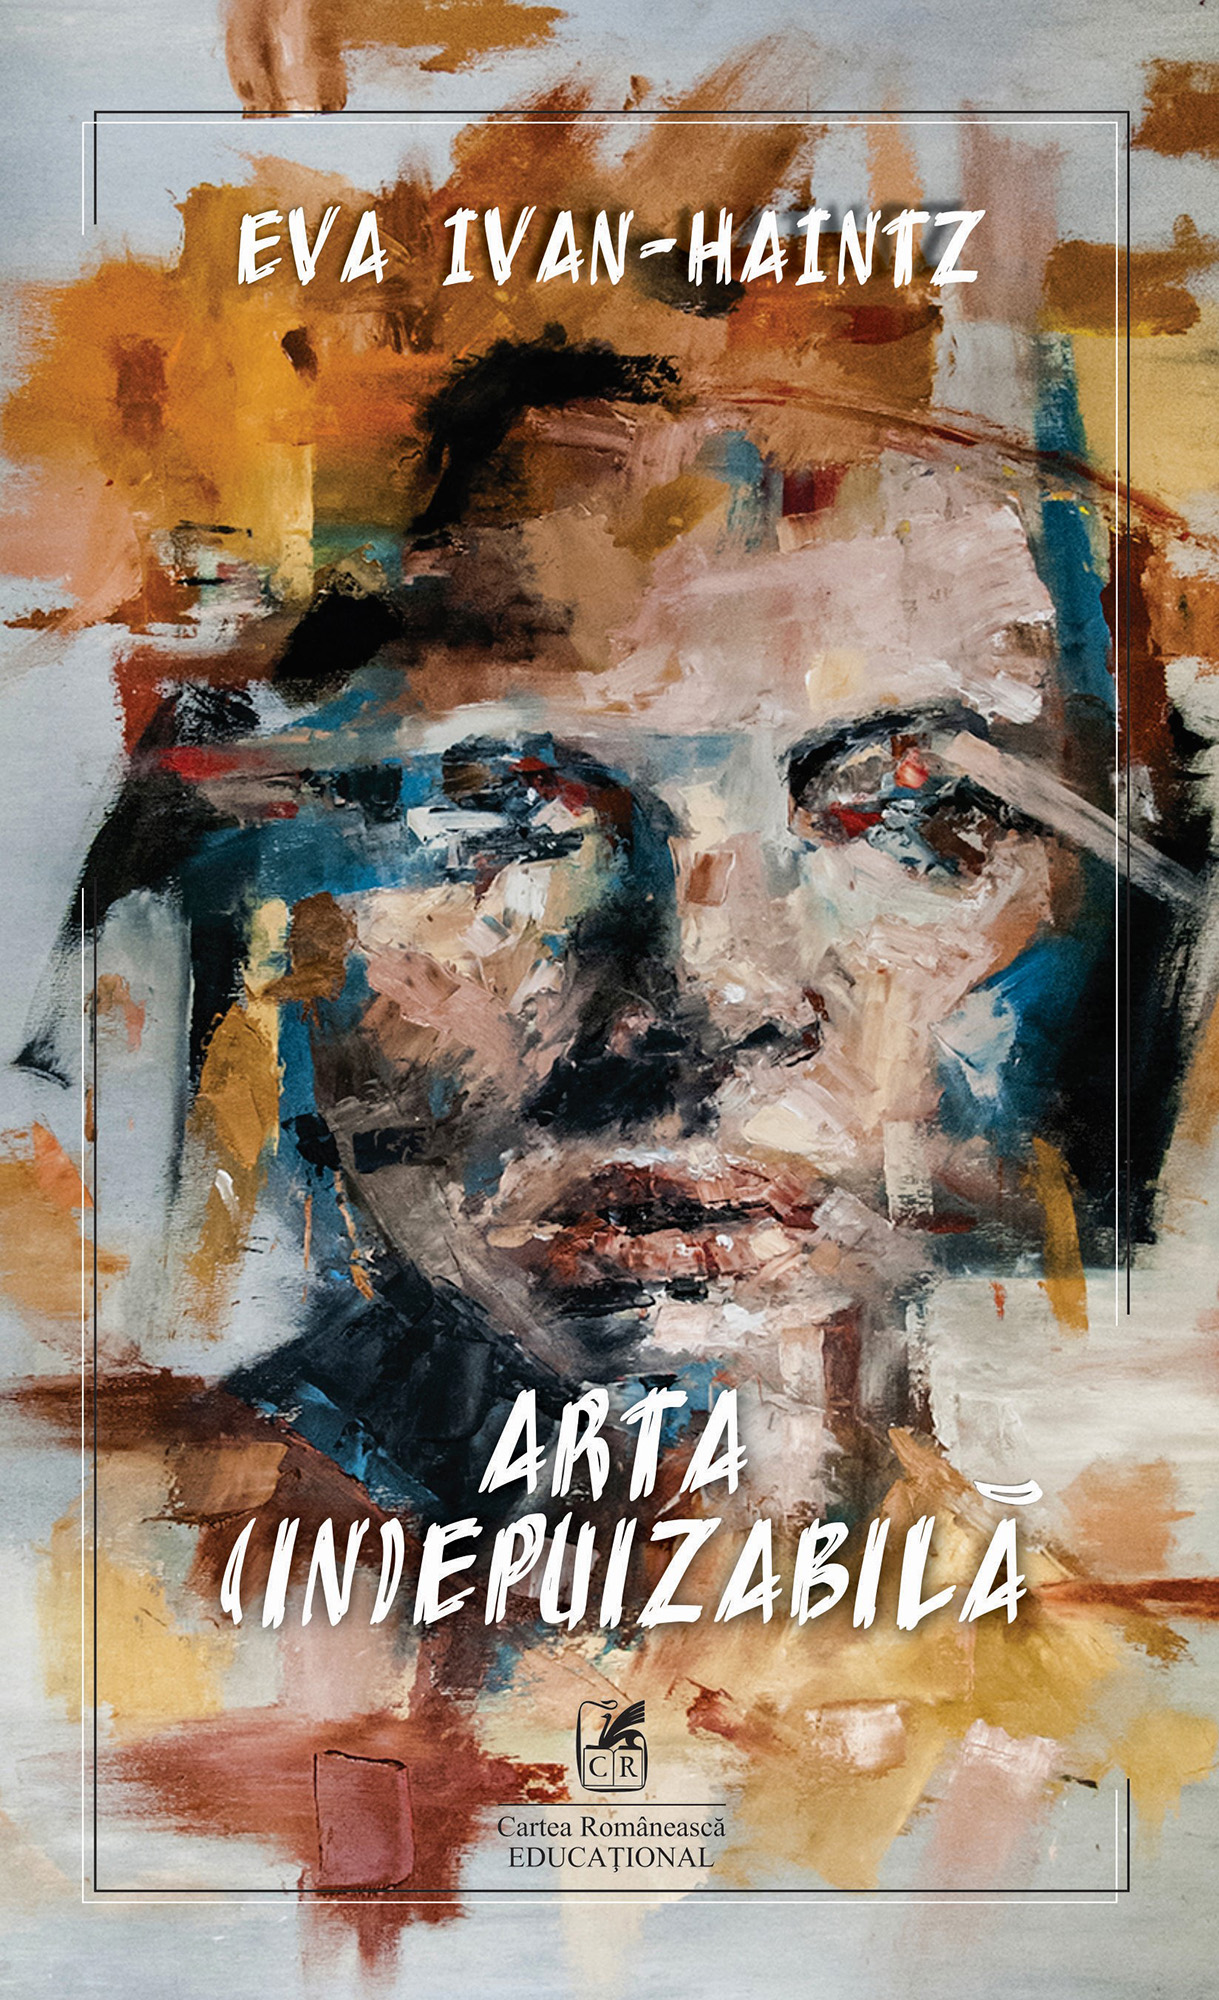 Arta (in)epuizabila | Eva Ivan-Haintz Cartea Romaneasca educational poza bestsellers.ro